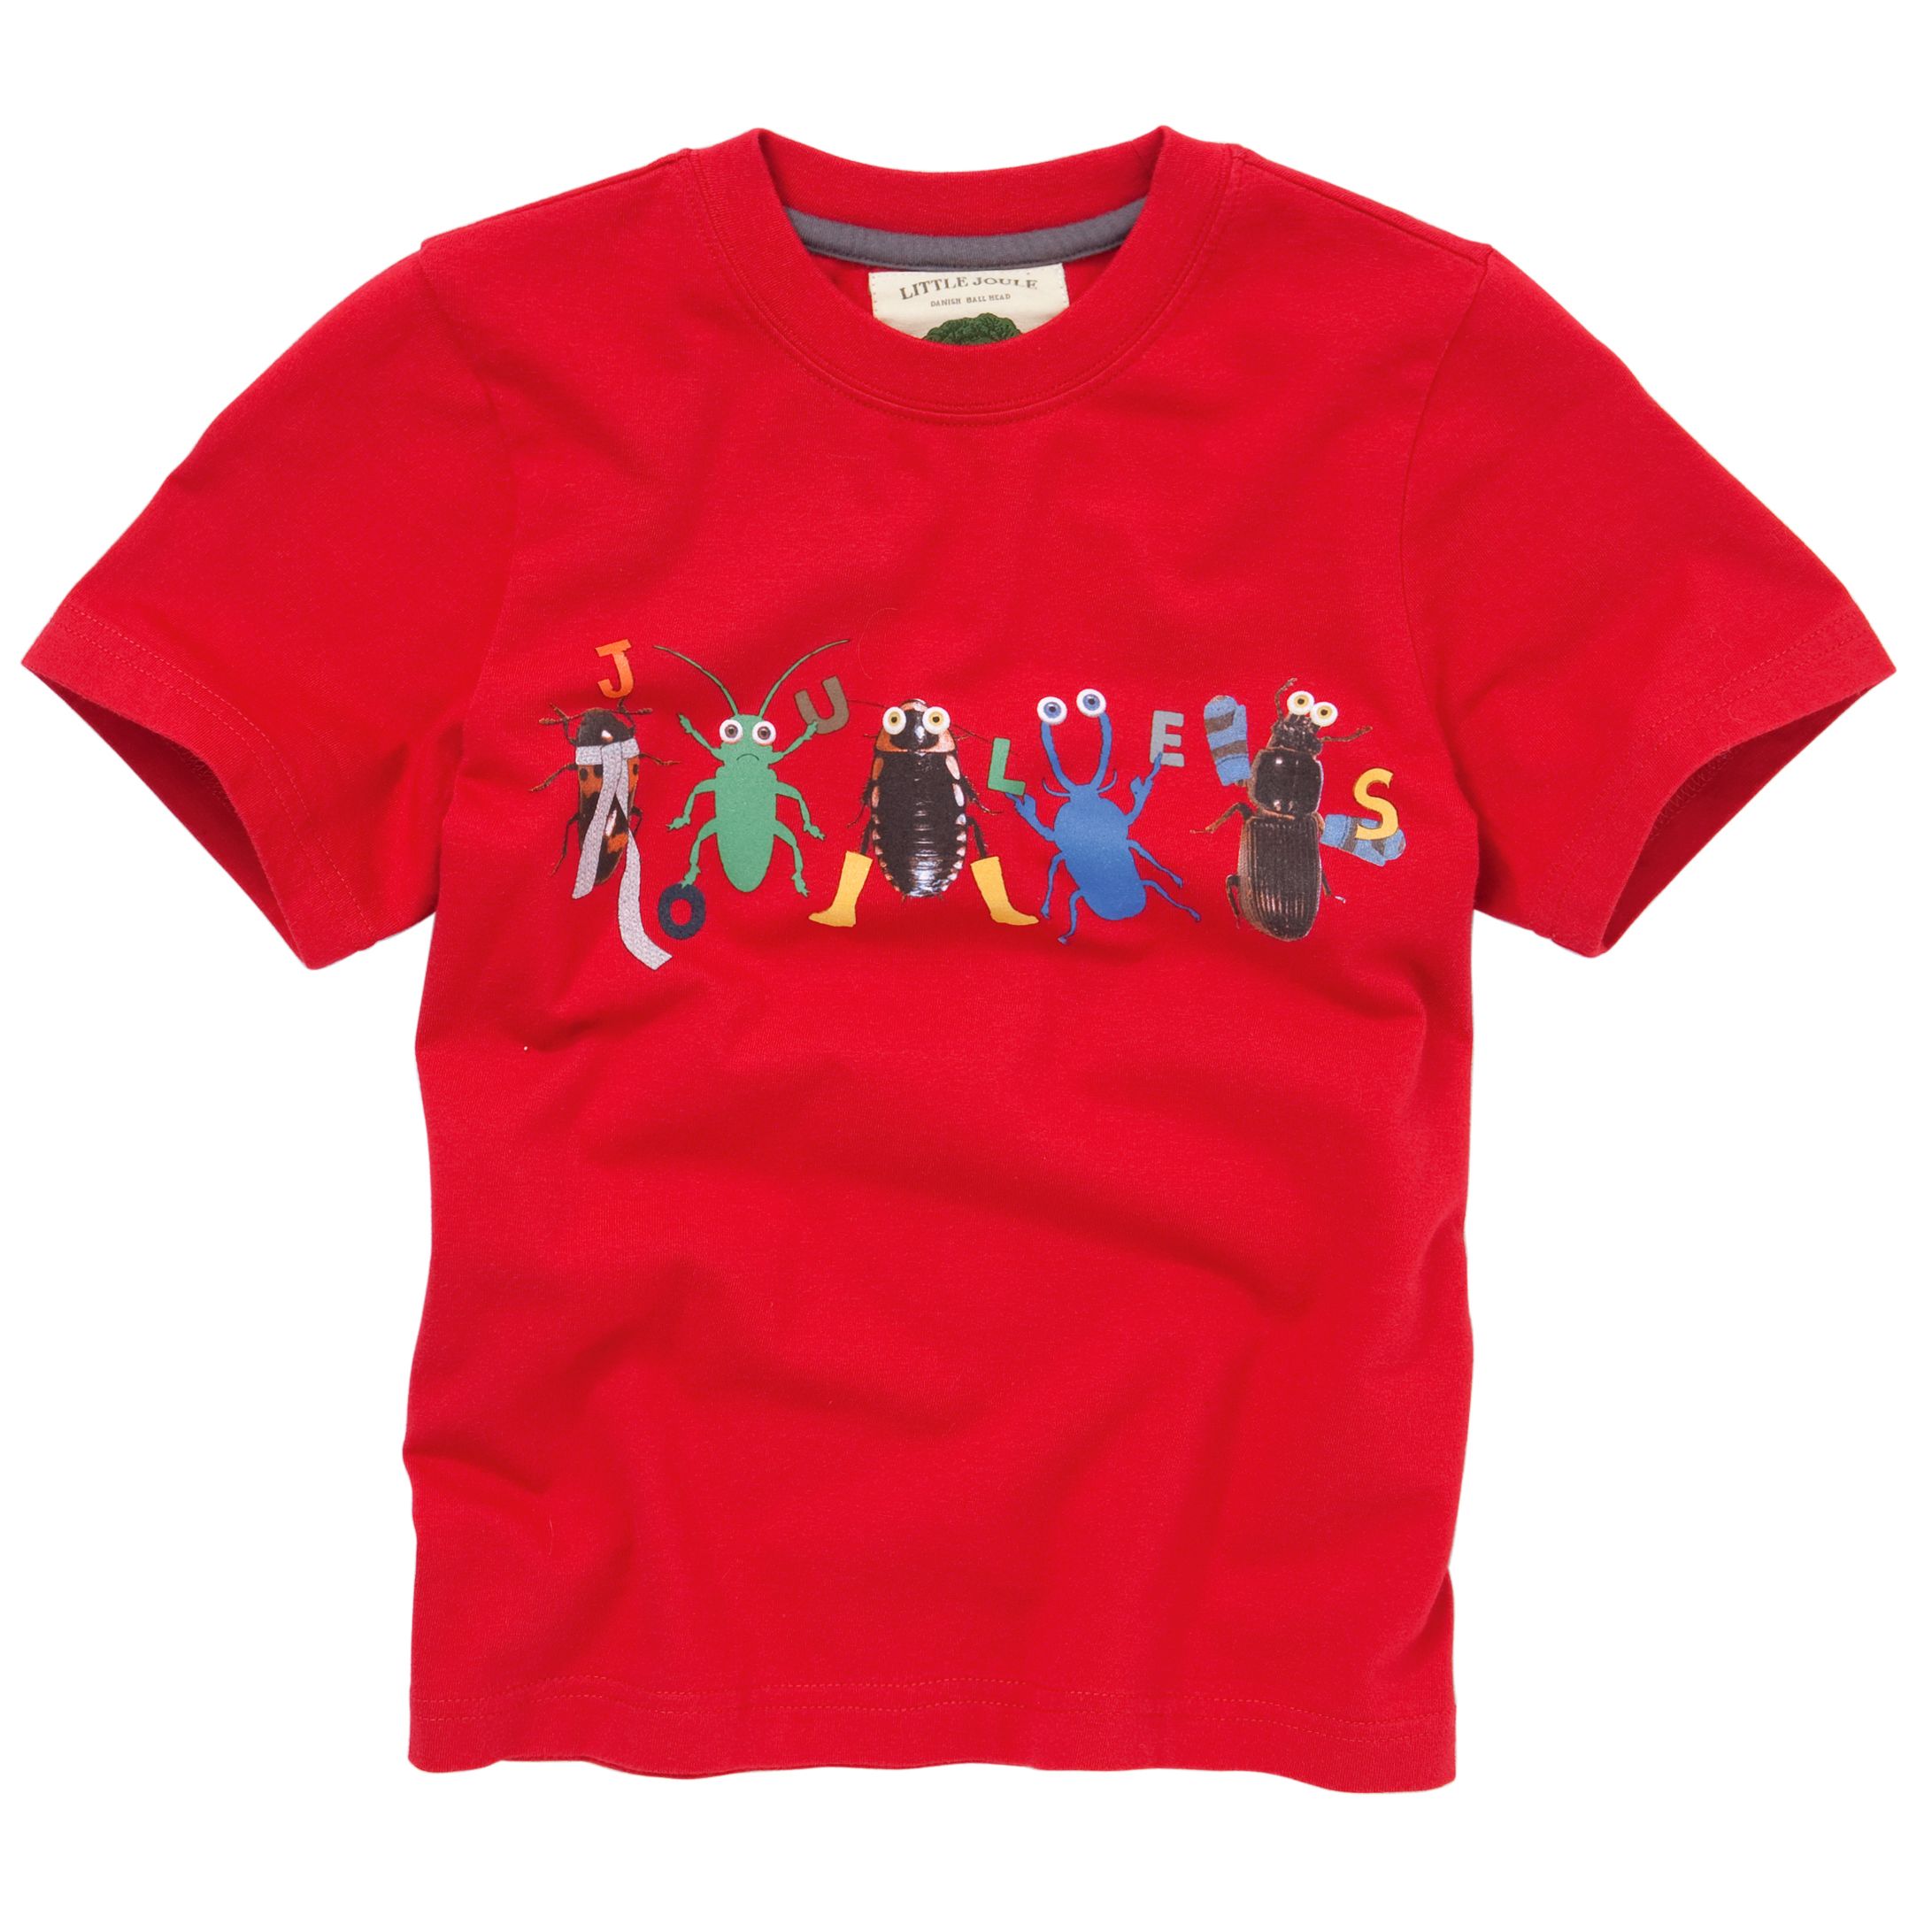 Stuart Bug Print T-Shirt, Red